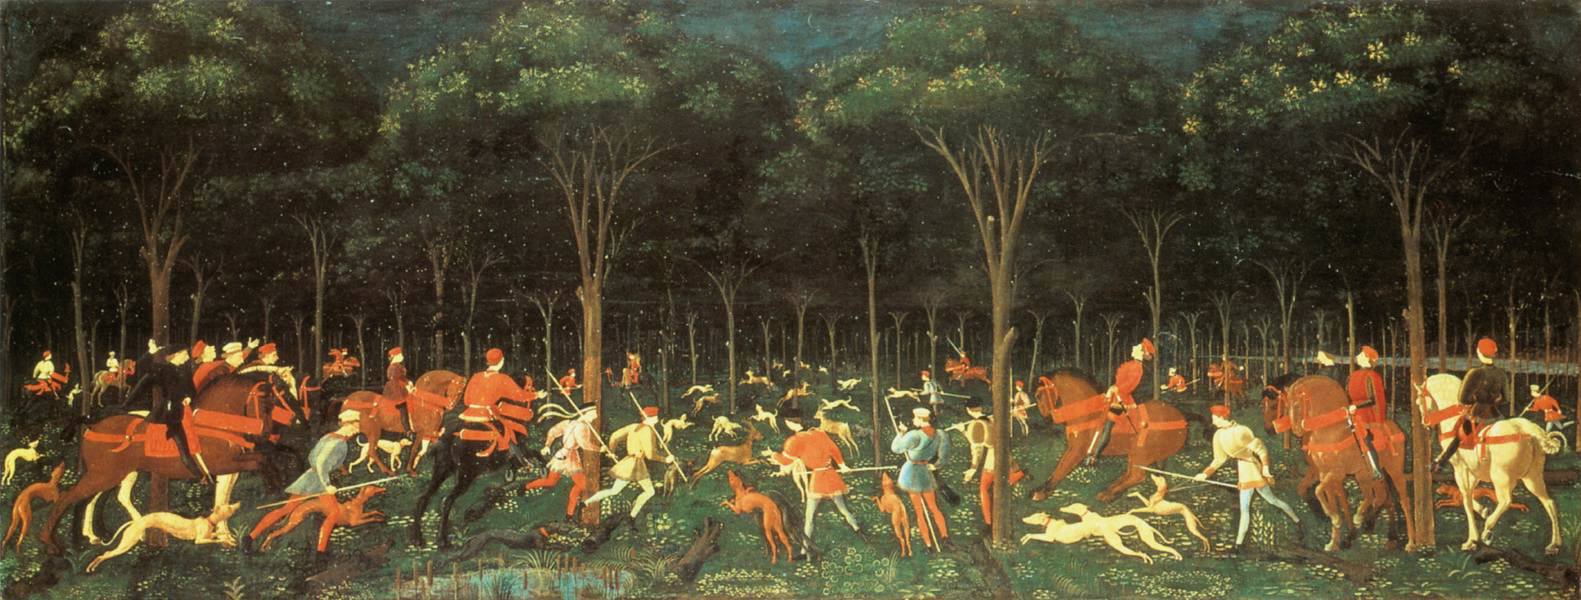 La caza en el bosque by Paolo Uccello - c. 1470 Museo Ashmolean